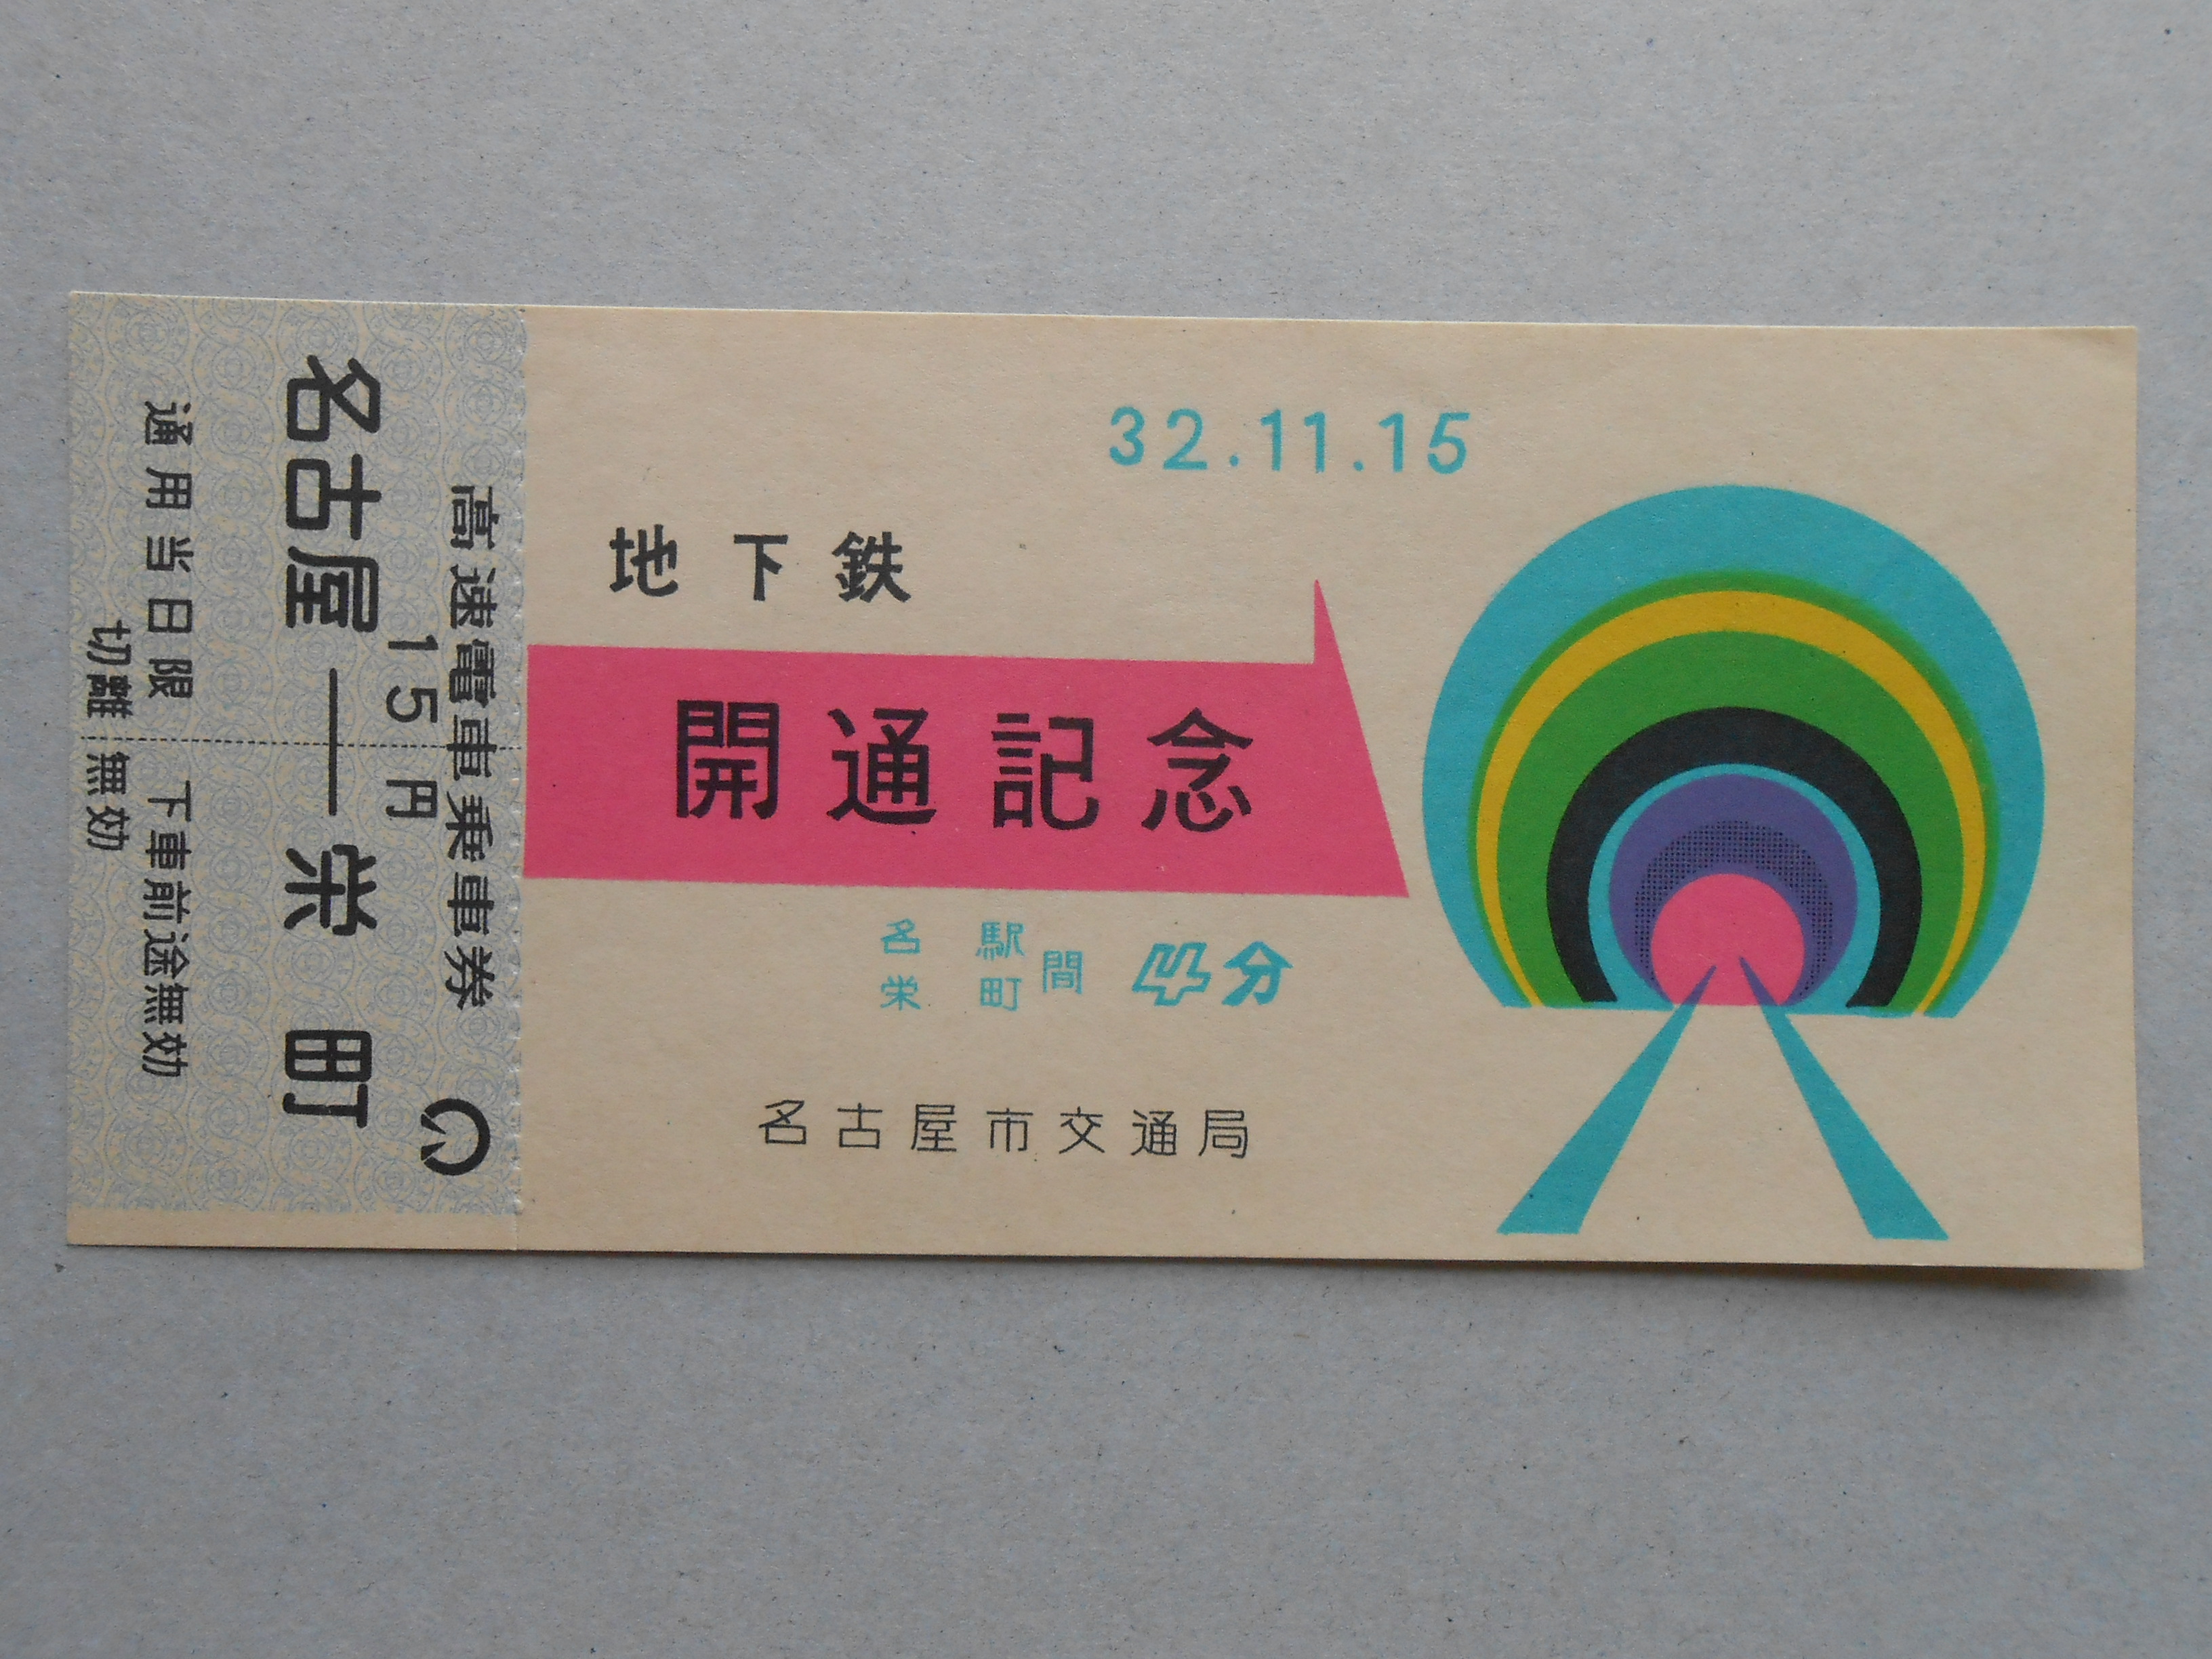 名古屋地下鉄開通記念高速電車乗車券